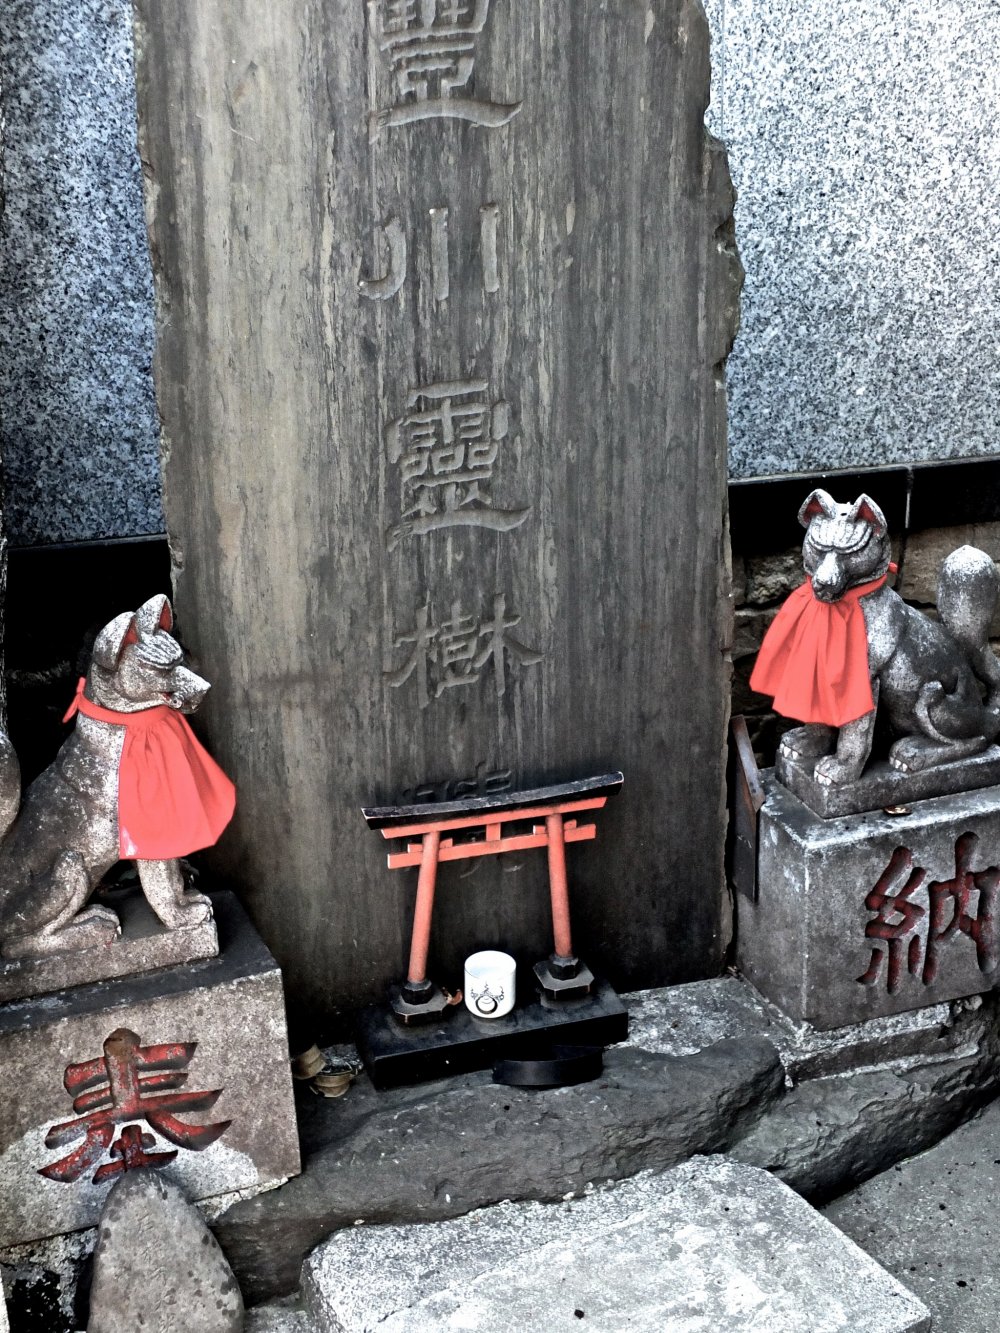 สุนัขจิ้งจอกและประตูแดง torii เป็นส่วนที่เหลืออยู่ของสมัยเมื่อวัดนี้เป็นศาลเจ้า